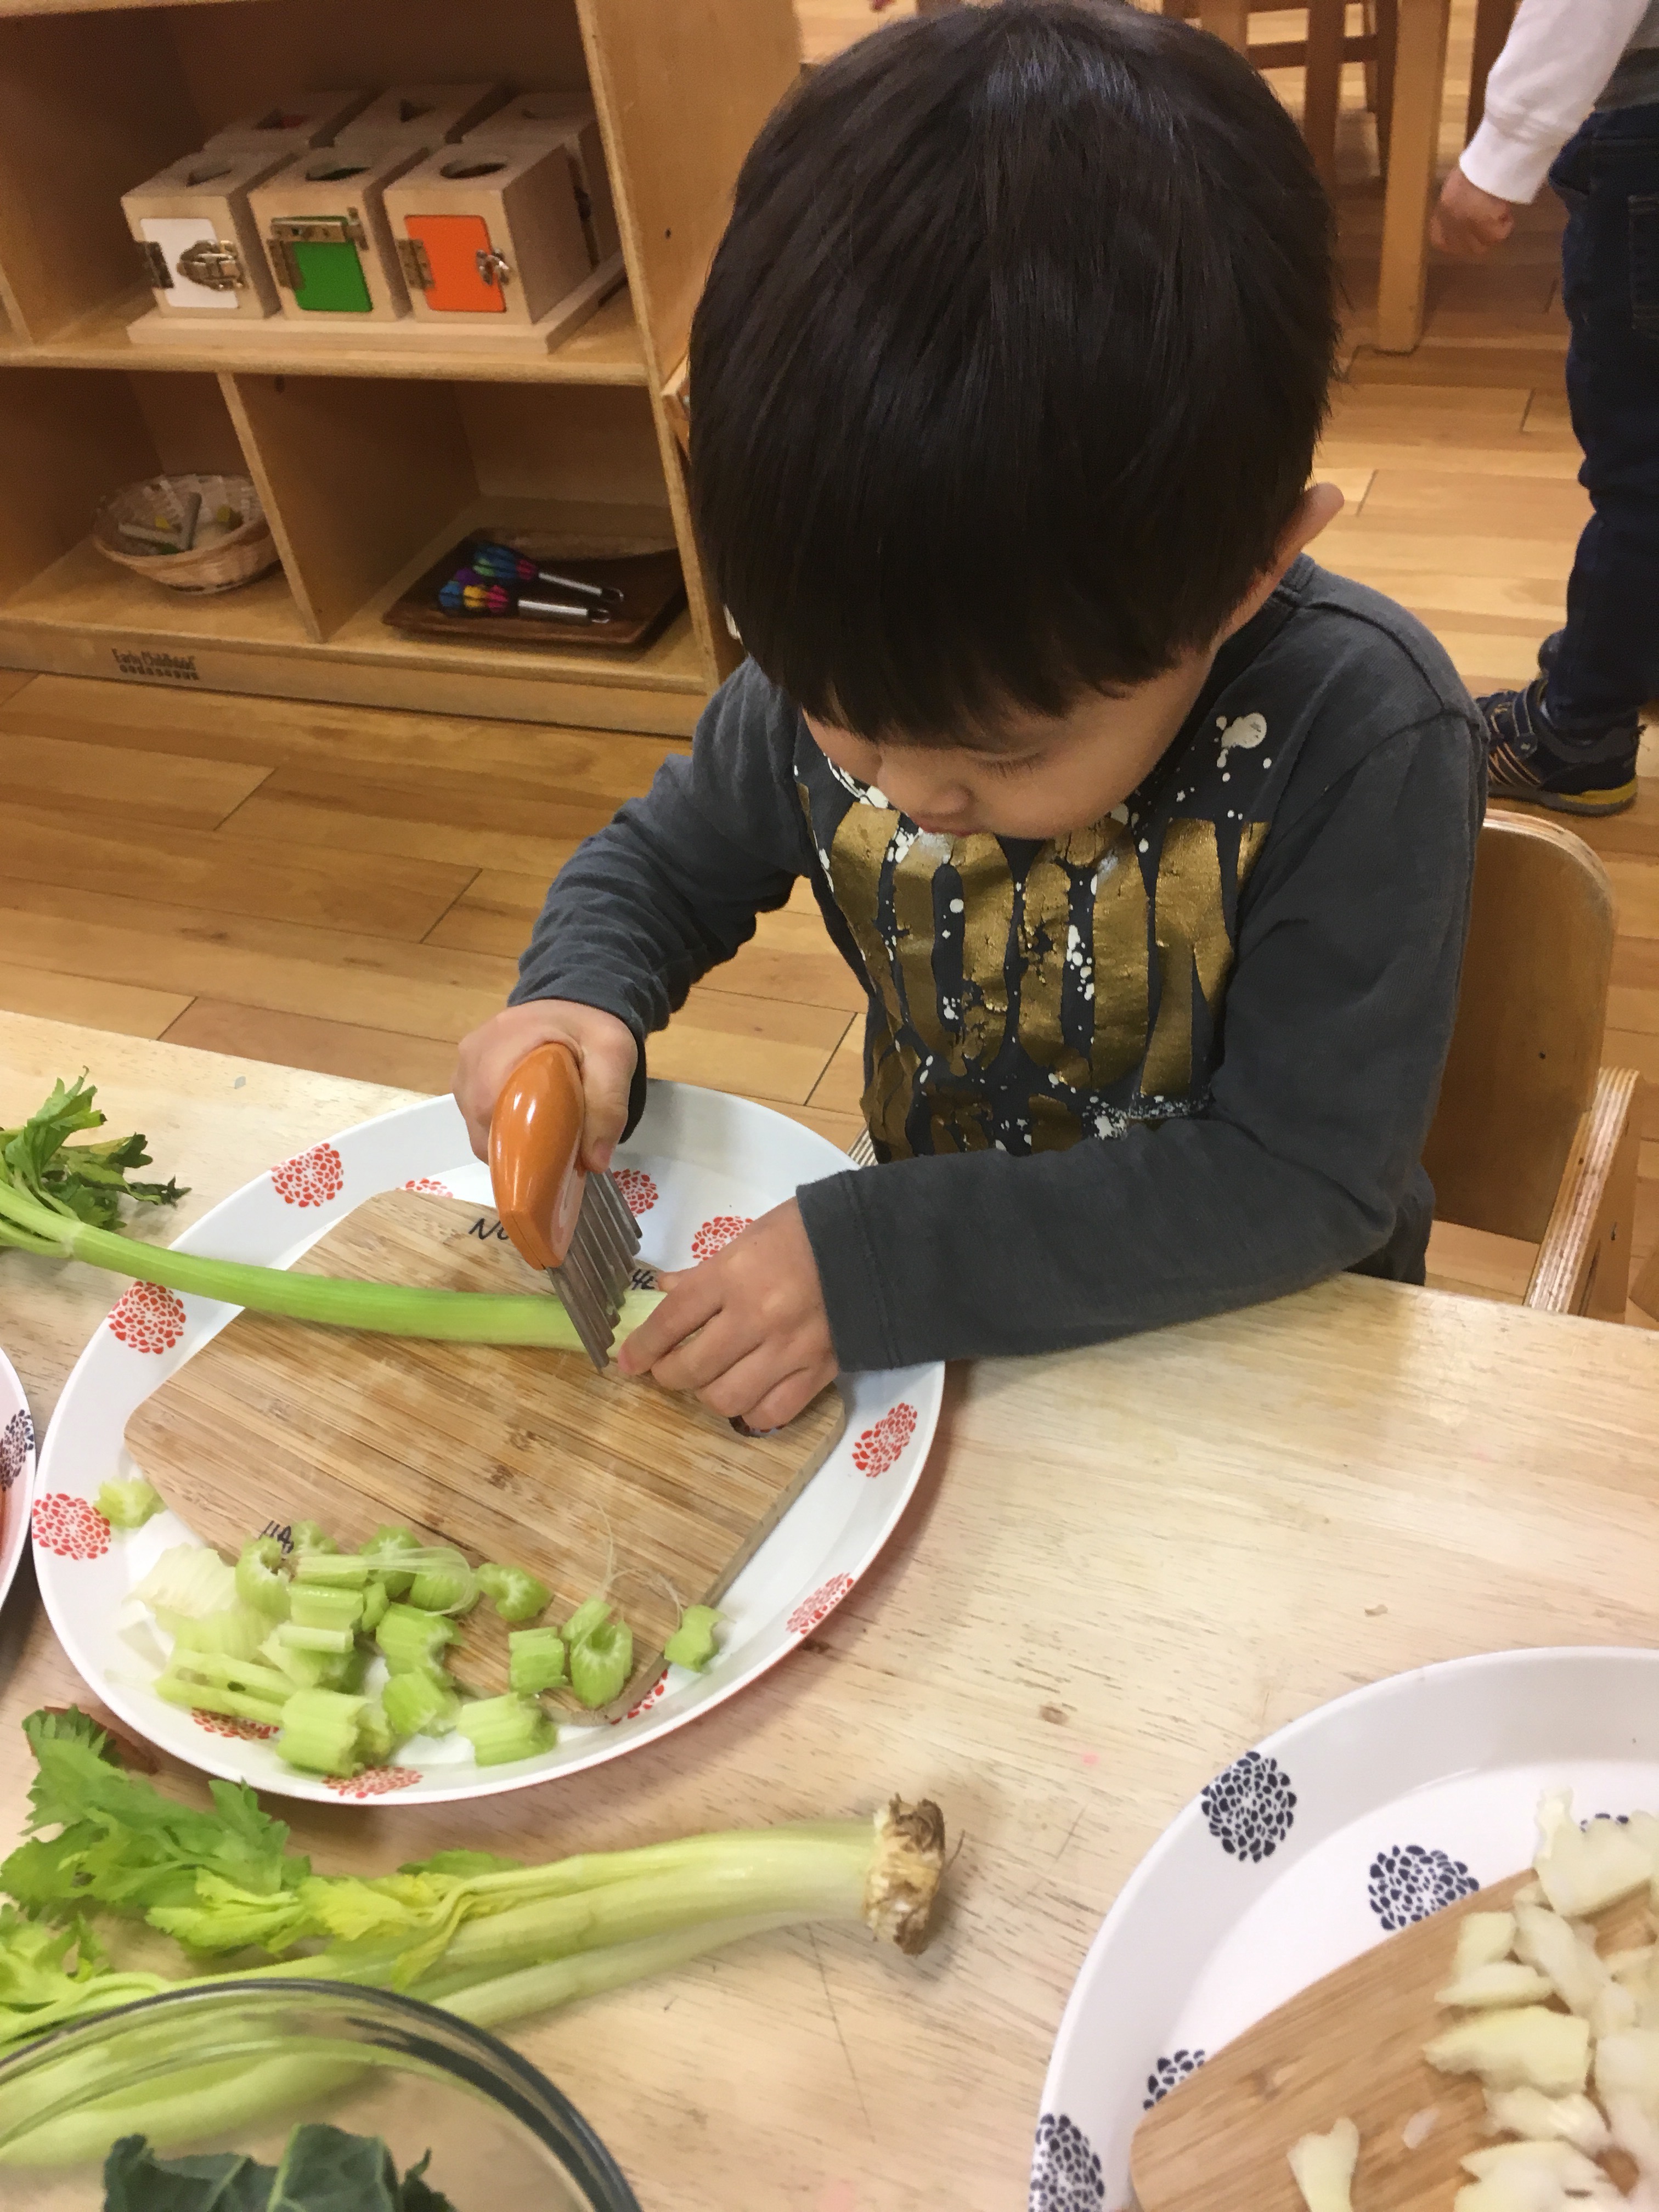 Child cutting celery in a Montessori school